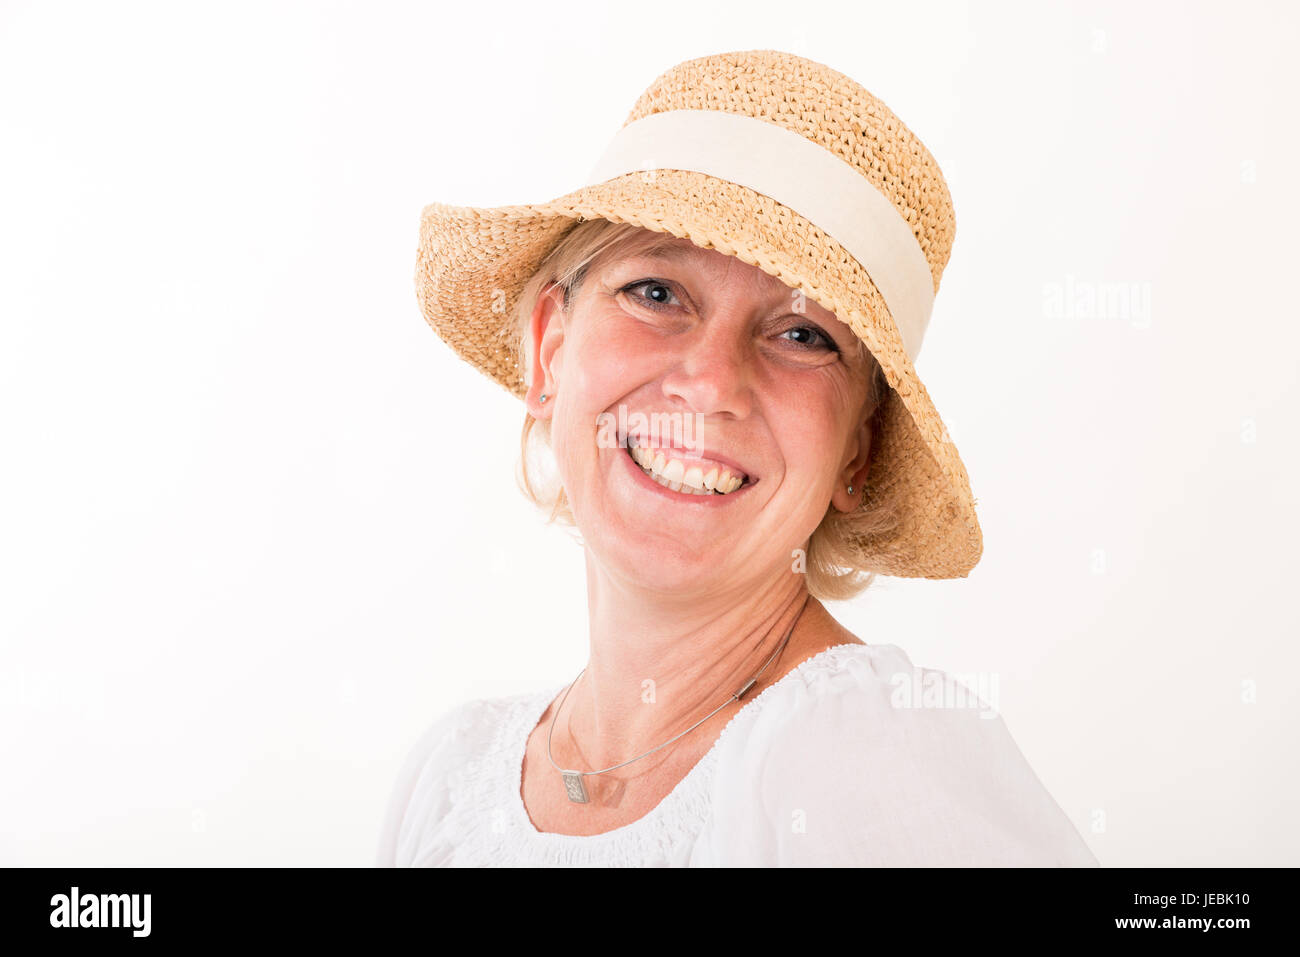 Portrait d'un milieu blond attrayant de european woman wearing white dress portant une tête d'été showin happy face - head shot - studio shot sur Banque D'Images